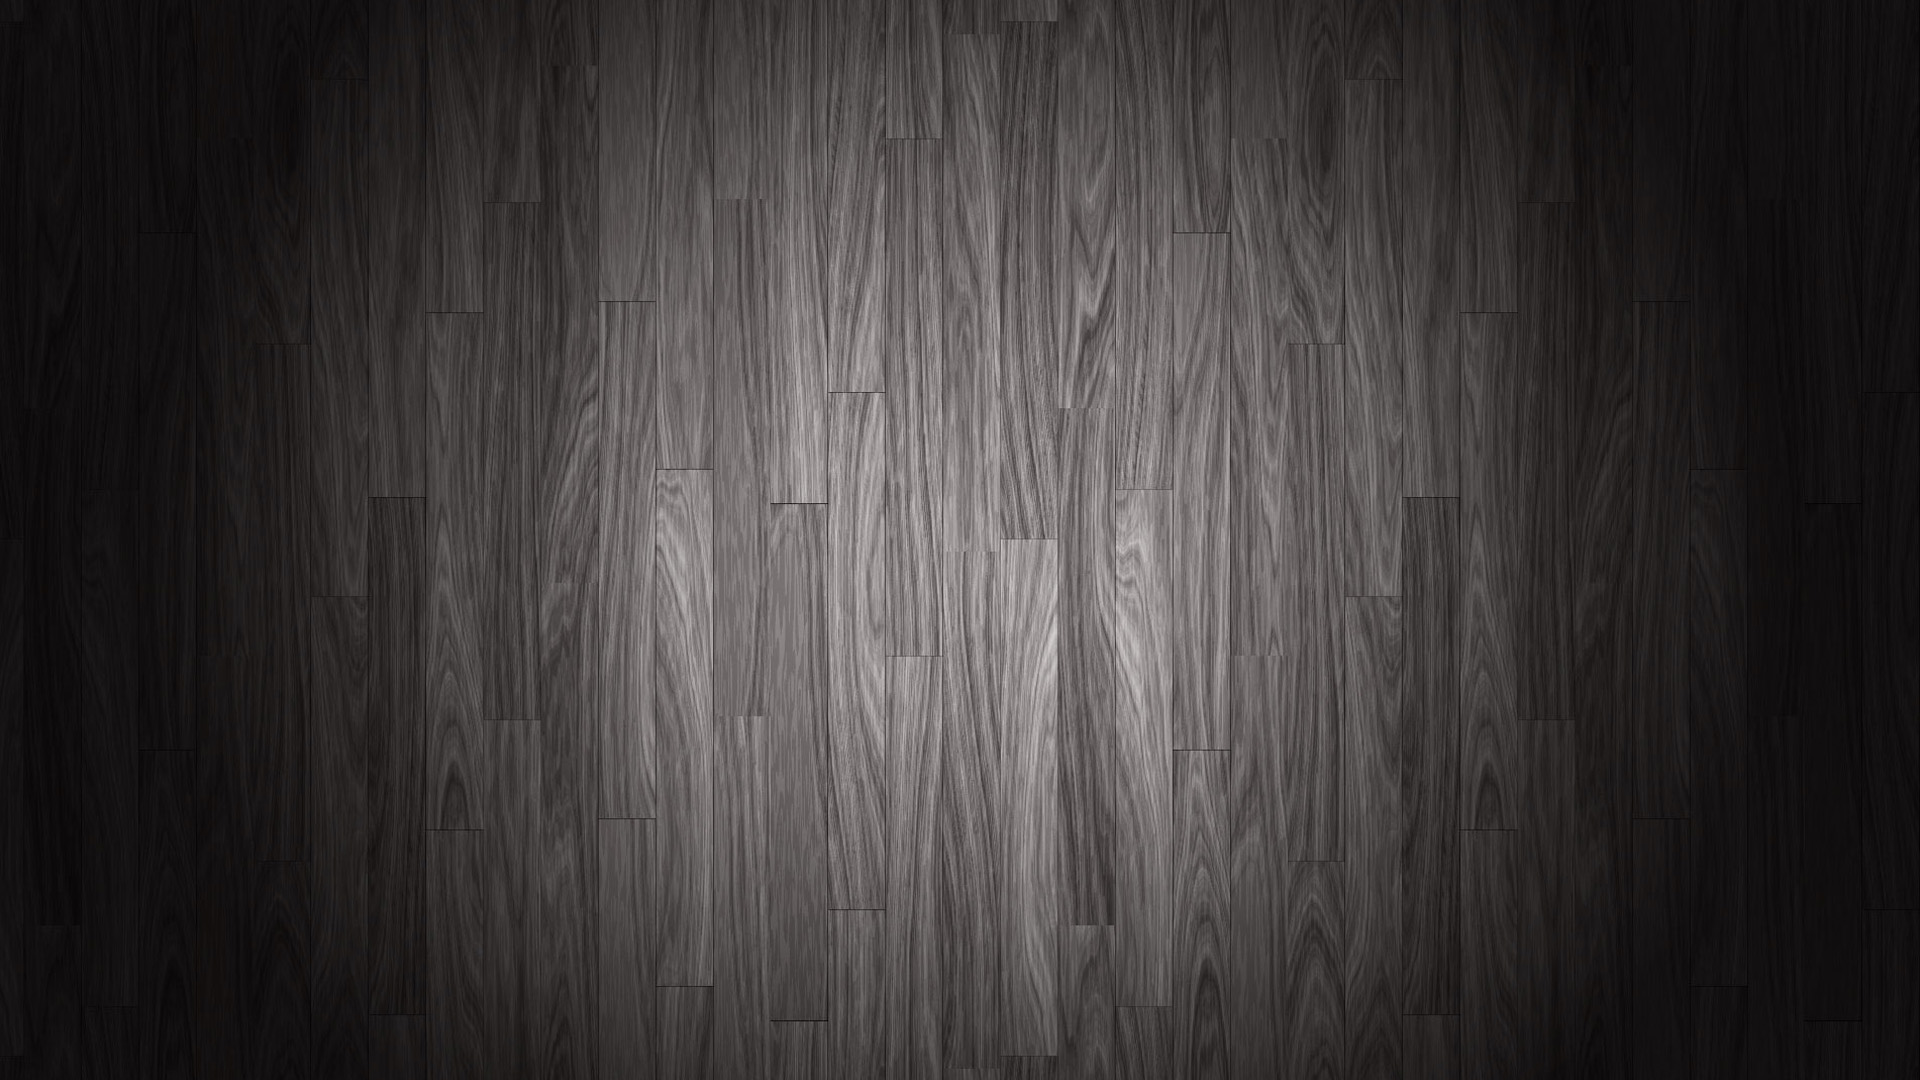 HD Wallpaper Barn Wood Texture X Kb Jpeg